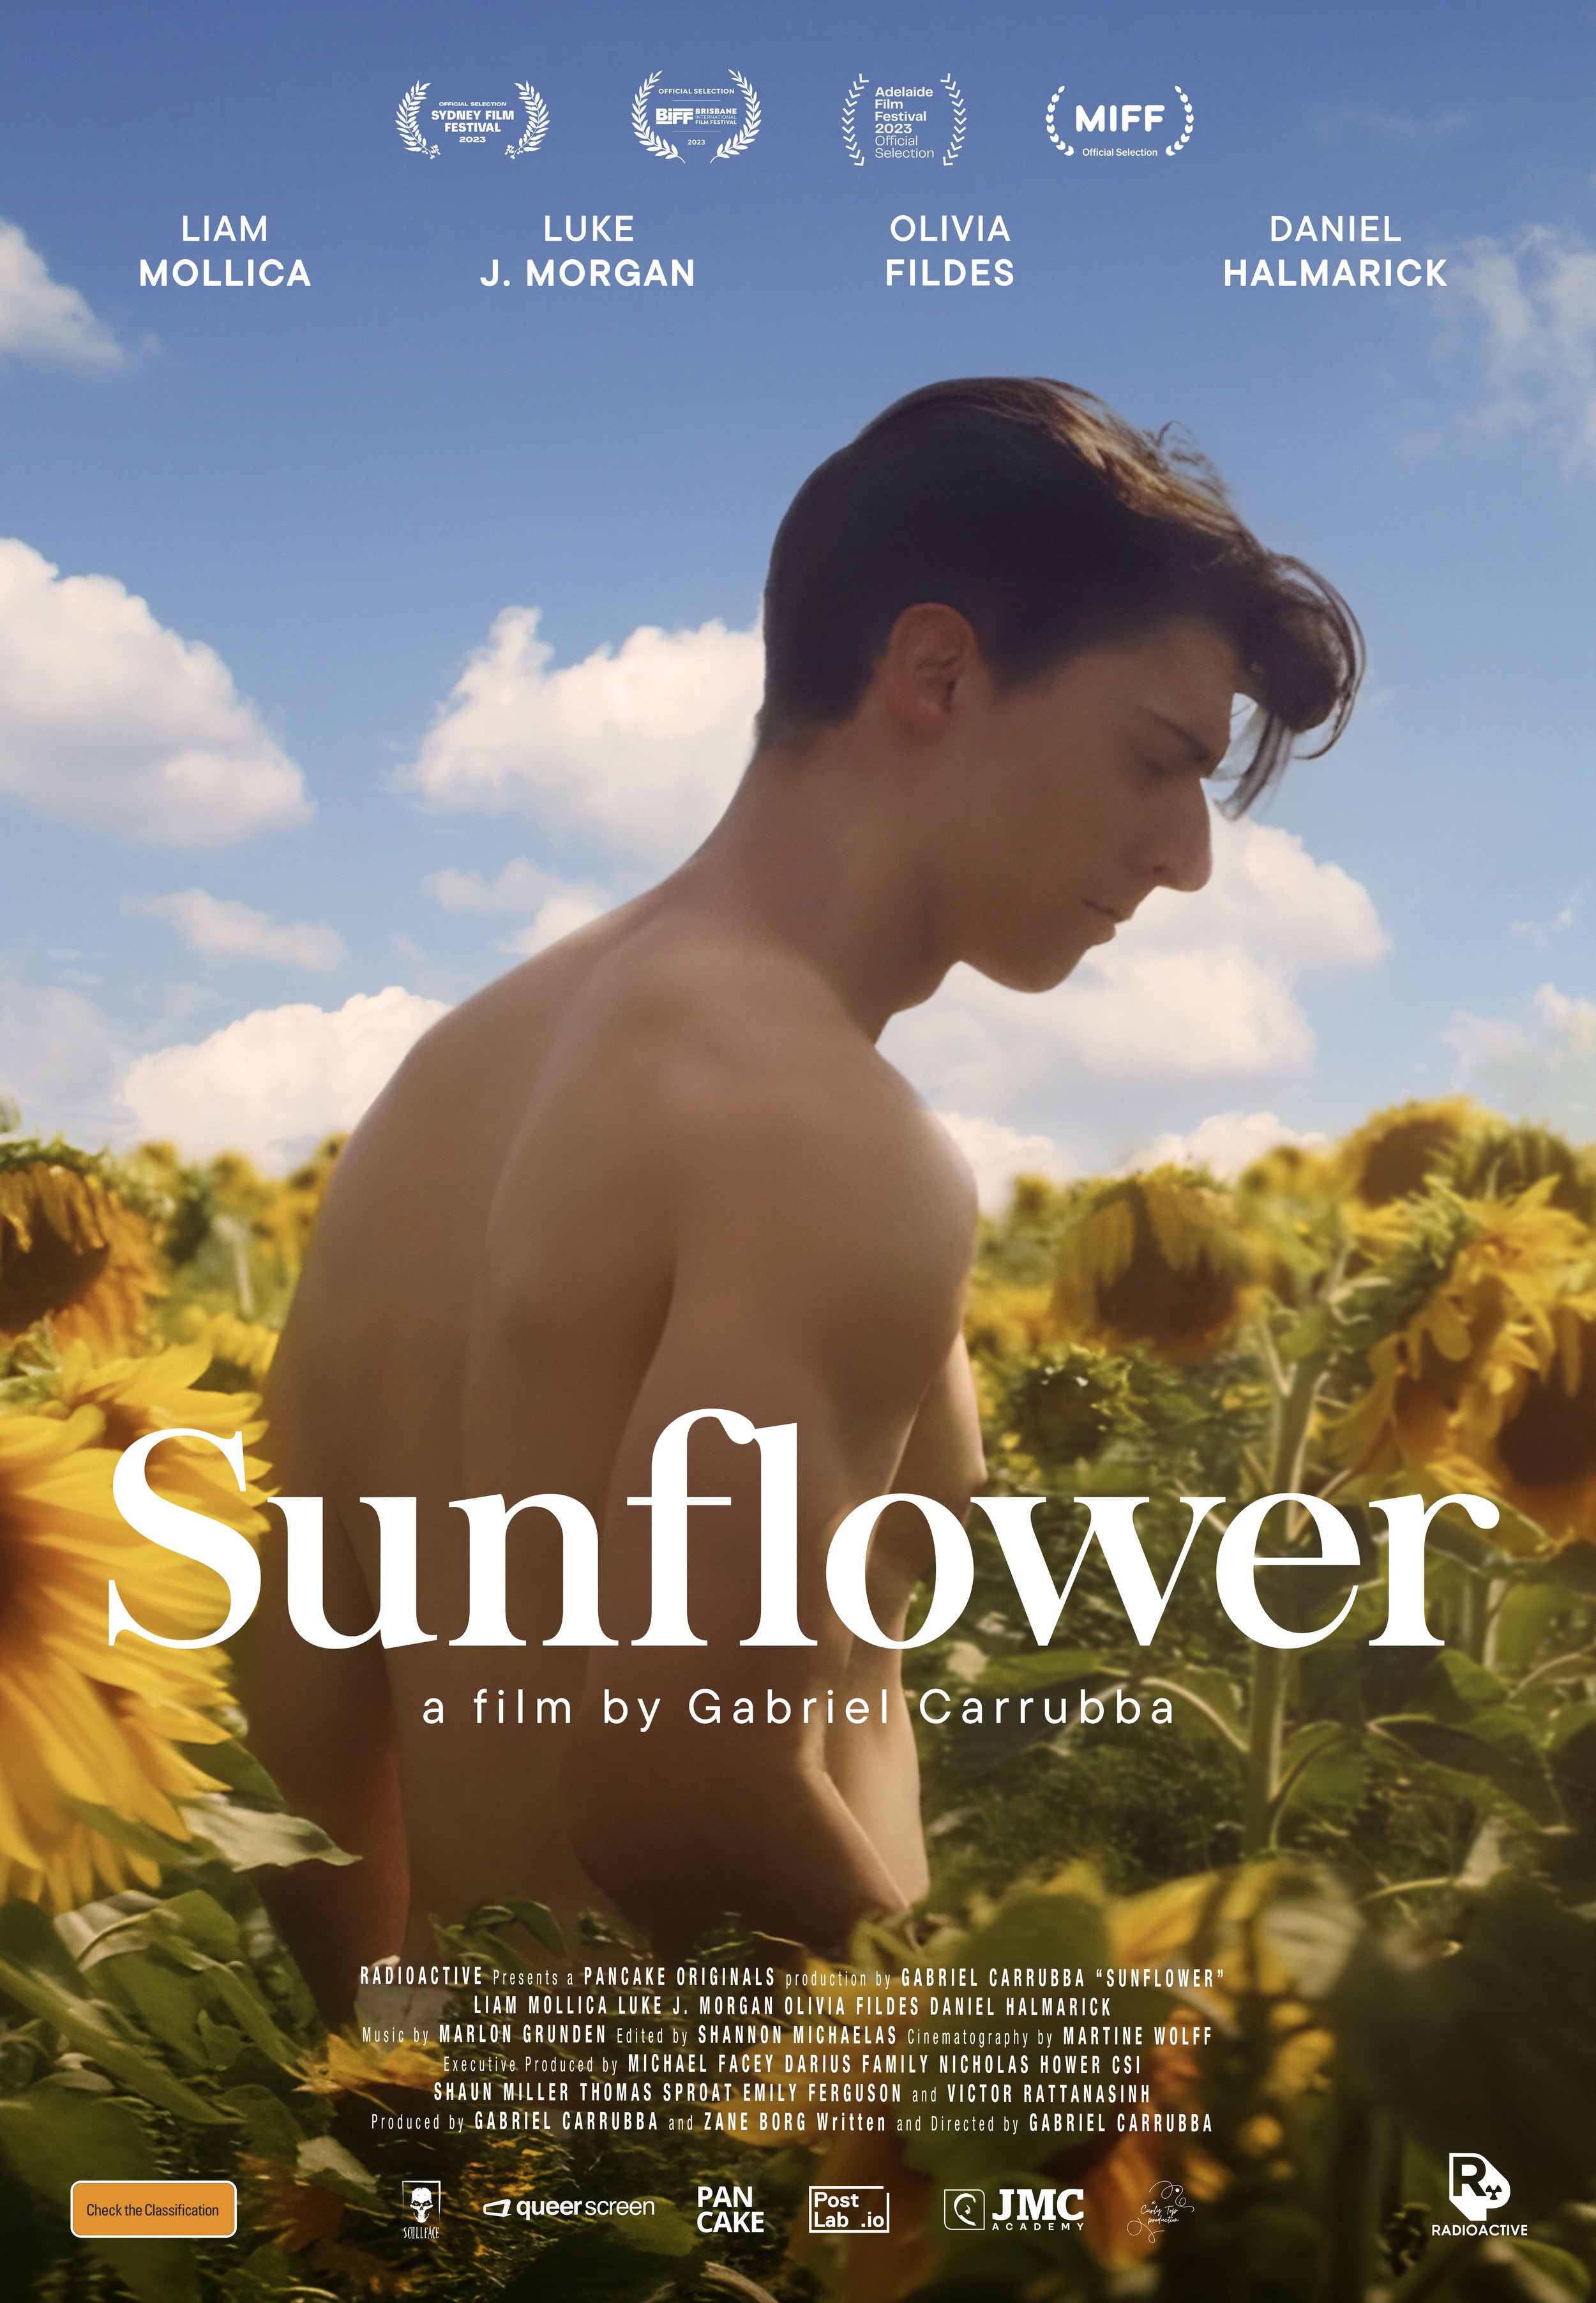 Sunflower Poster 69x100cm HR [rgb]_Final Opt 1.jpg